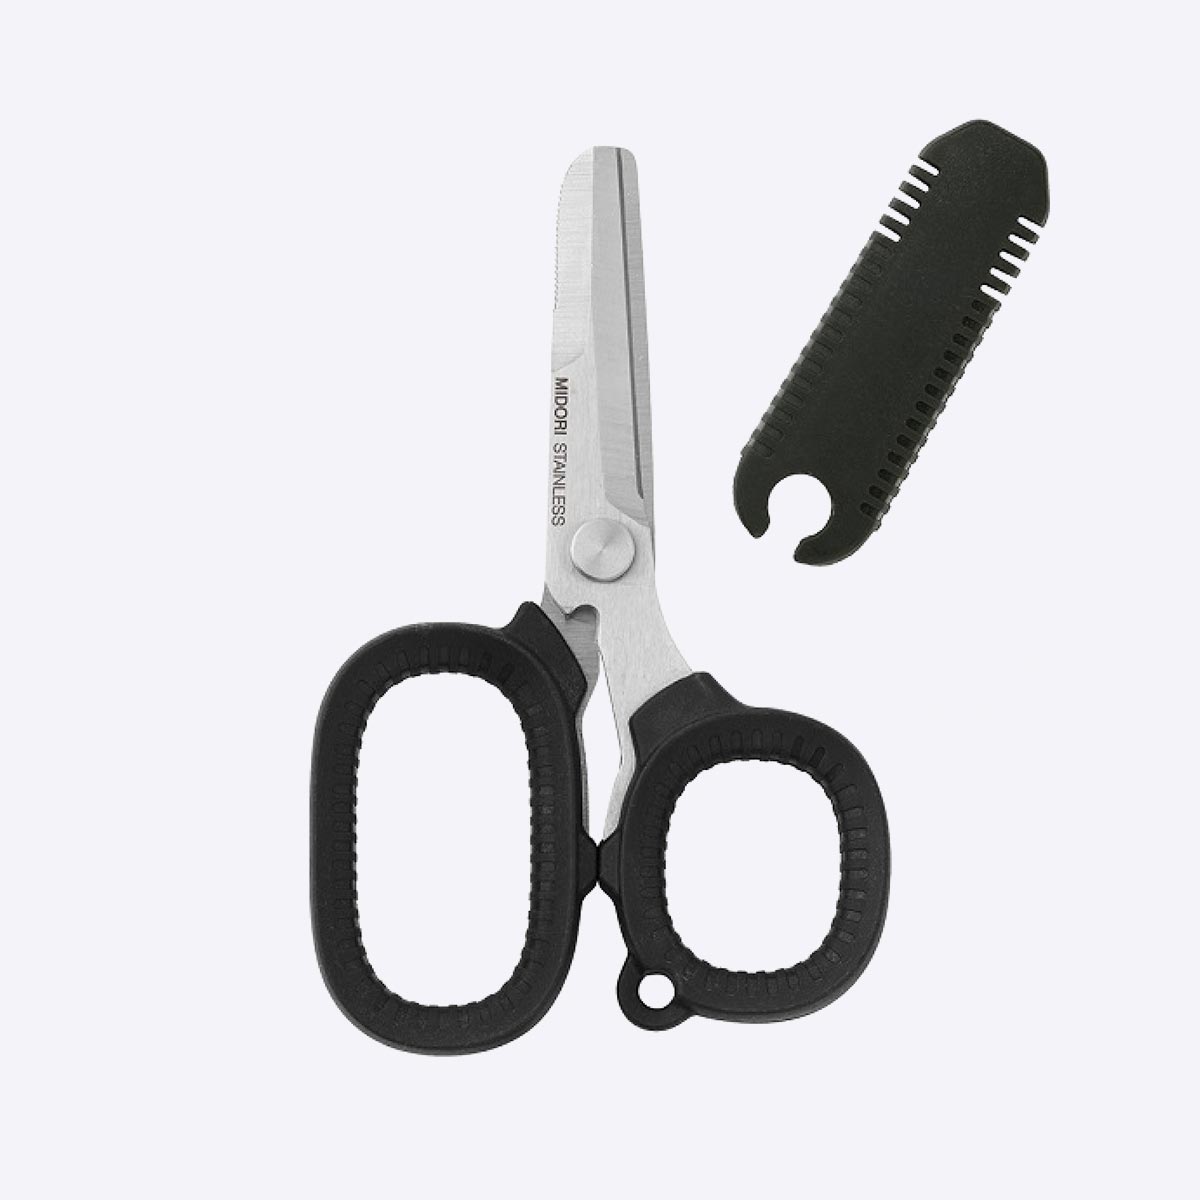 Multi Use Scissors